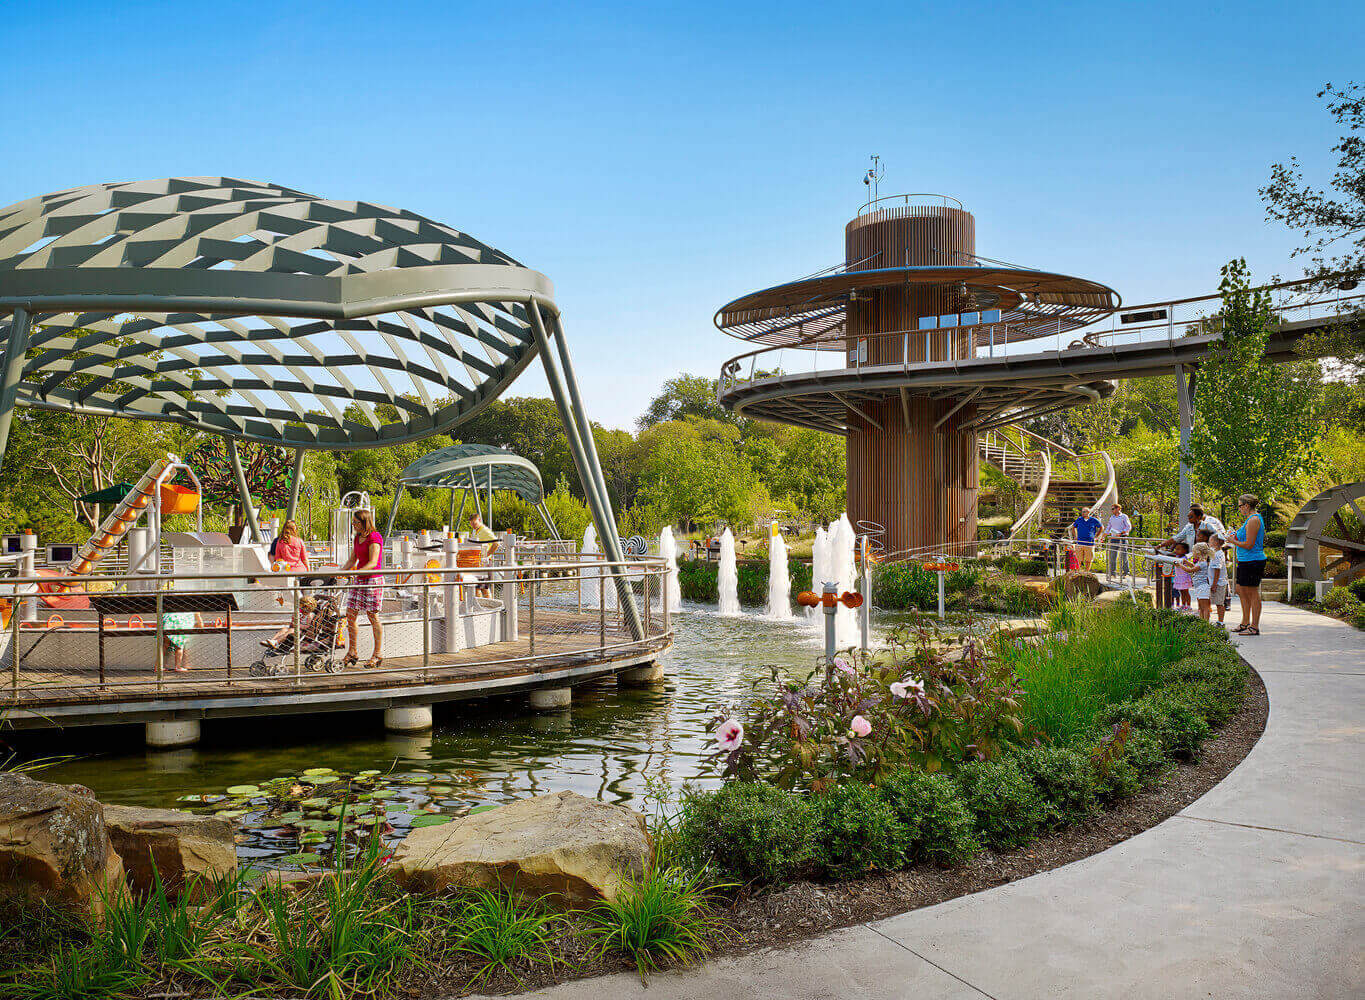 Dallas Arboretum Children’s Adventure Garden & Education Center